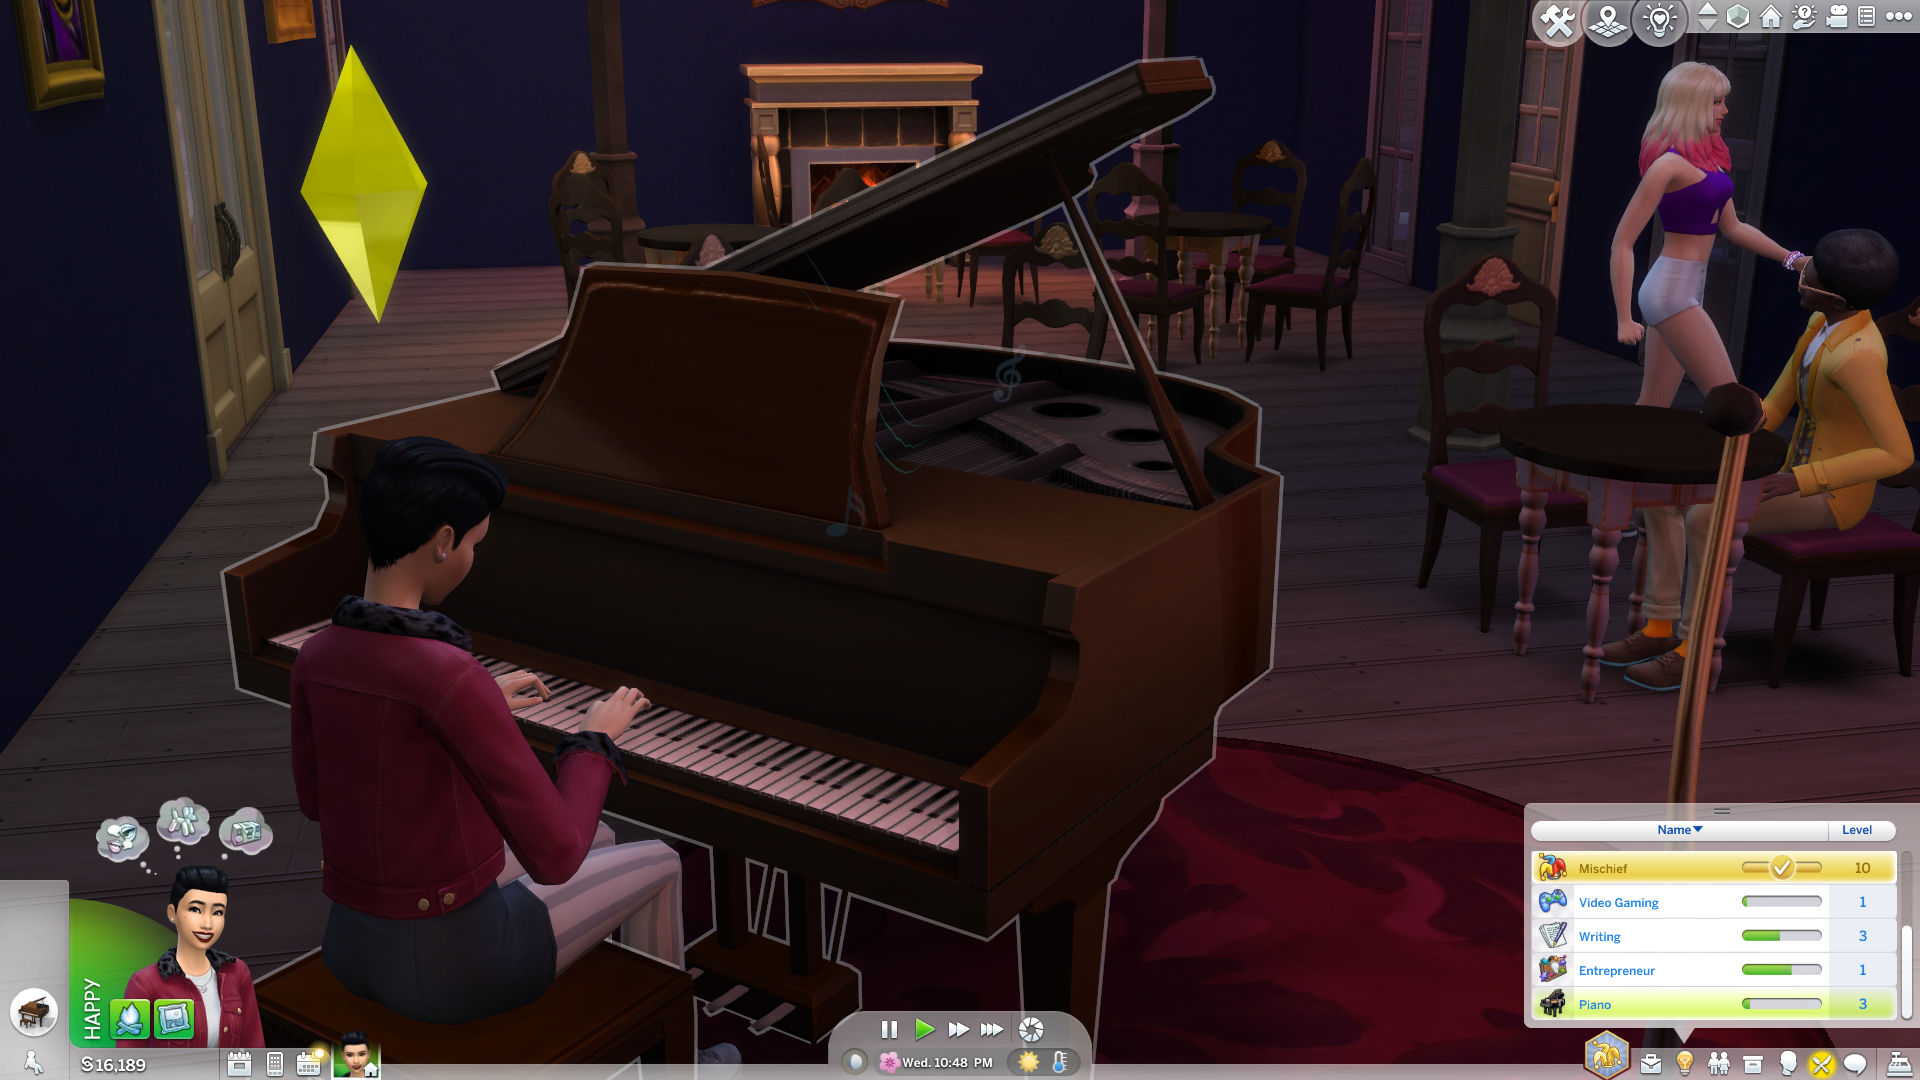 سيمز يعزف على البيانو في لعبة Sims 4